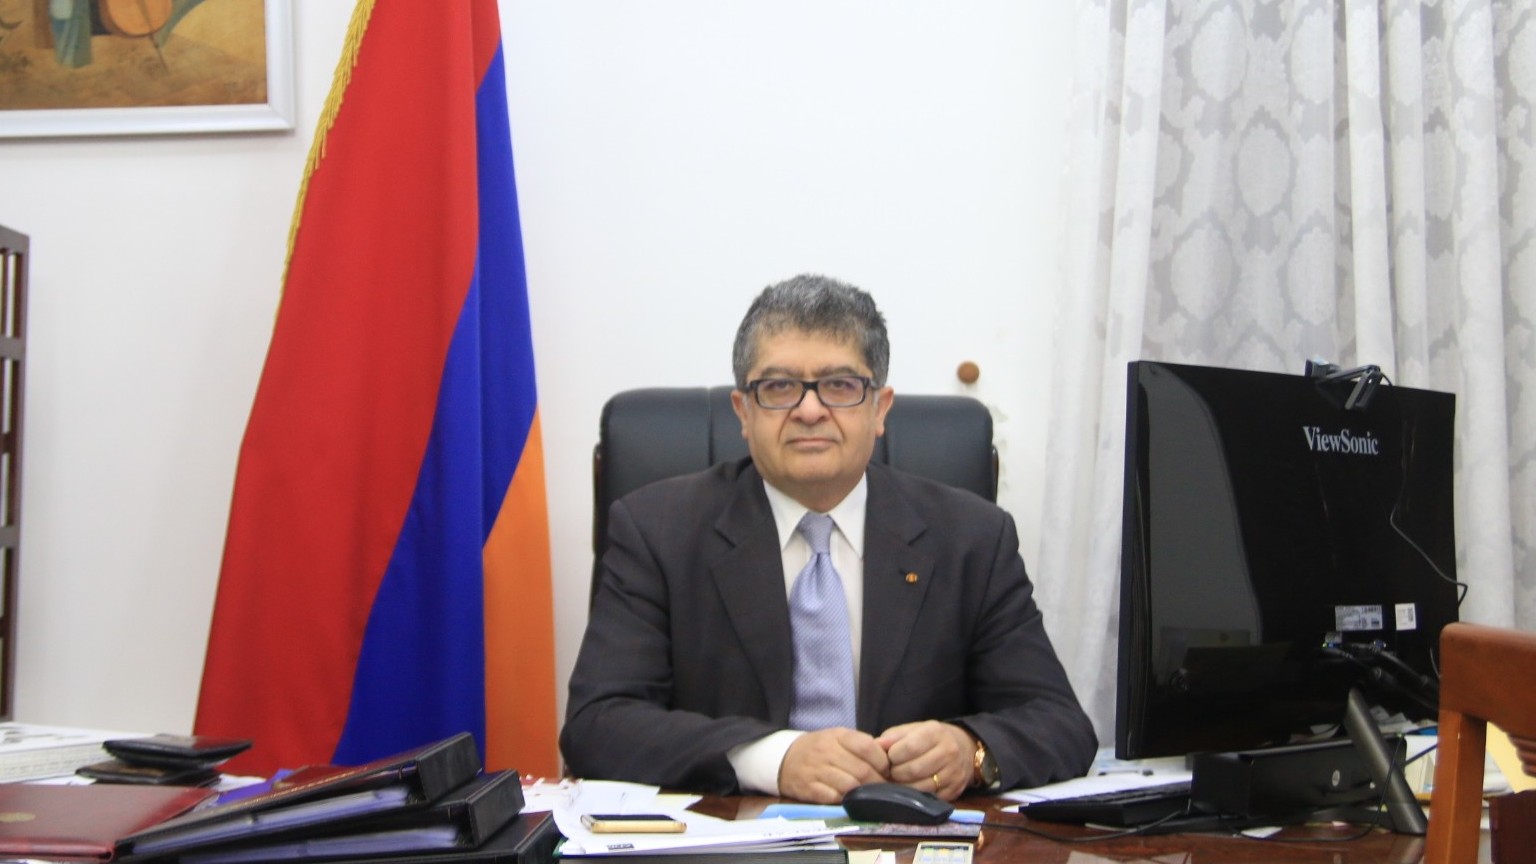 Đại sứ Armenia Vahram Kazhoyan: Rất nhiều tiềm năng hợp tác, giao lưu nhân dân hai nước chúng ta